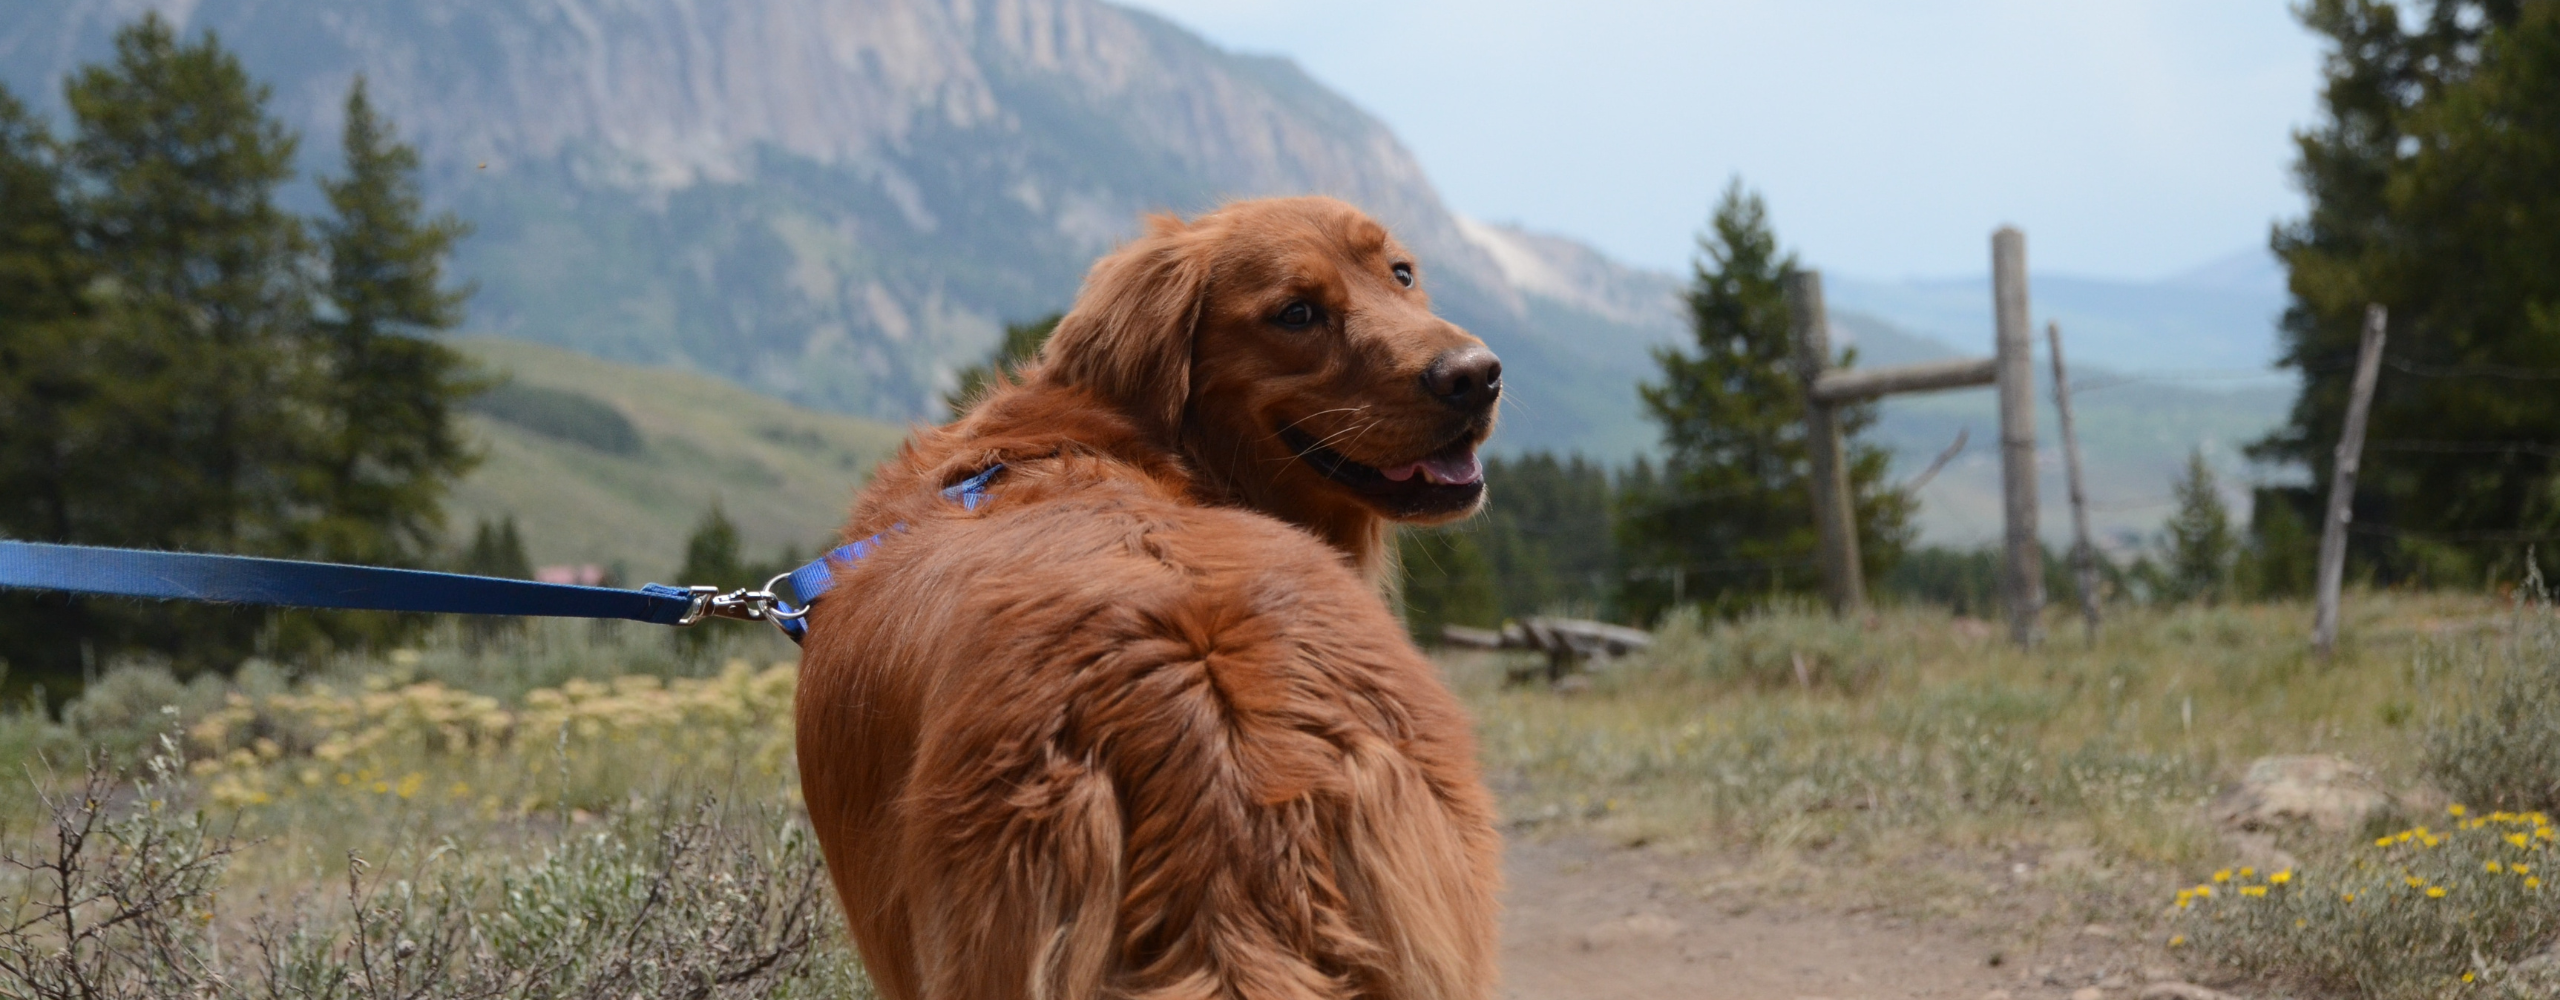 Golden retriever dog in Colorado